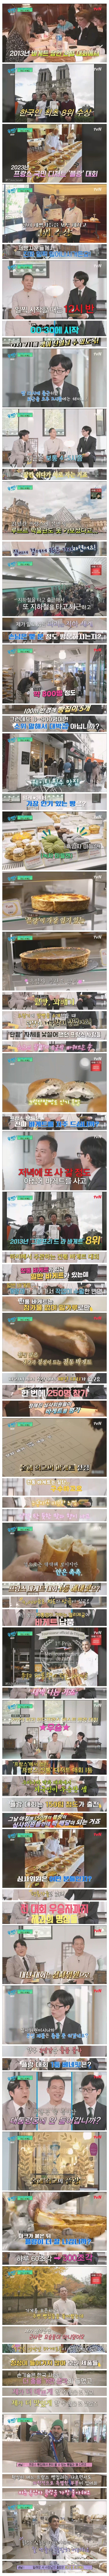 프랑스 국민 디저트 \'플랑\' 대회에서 1등한 한국인 제빵사